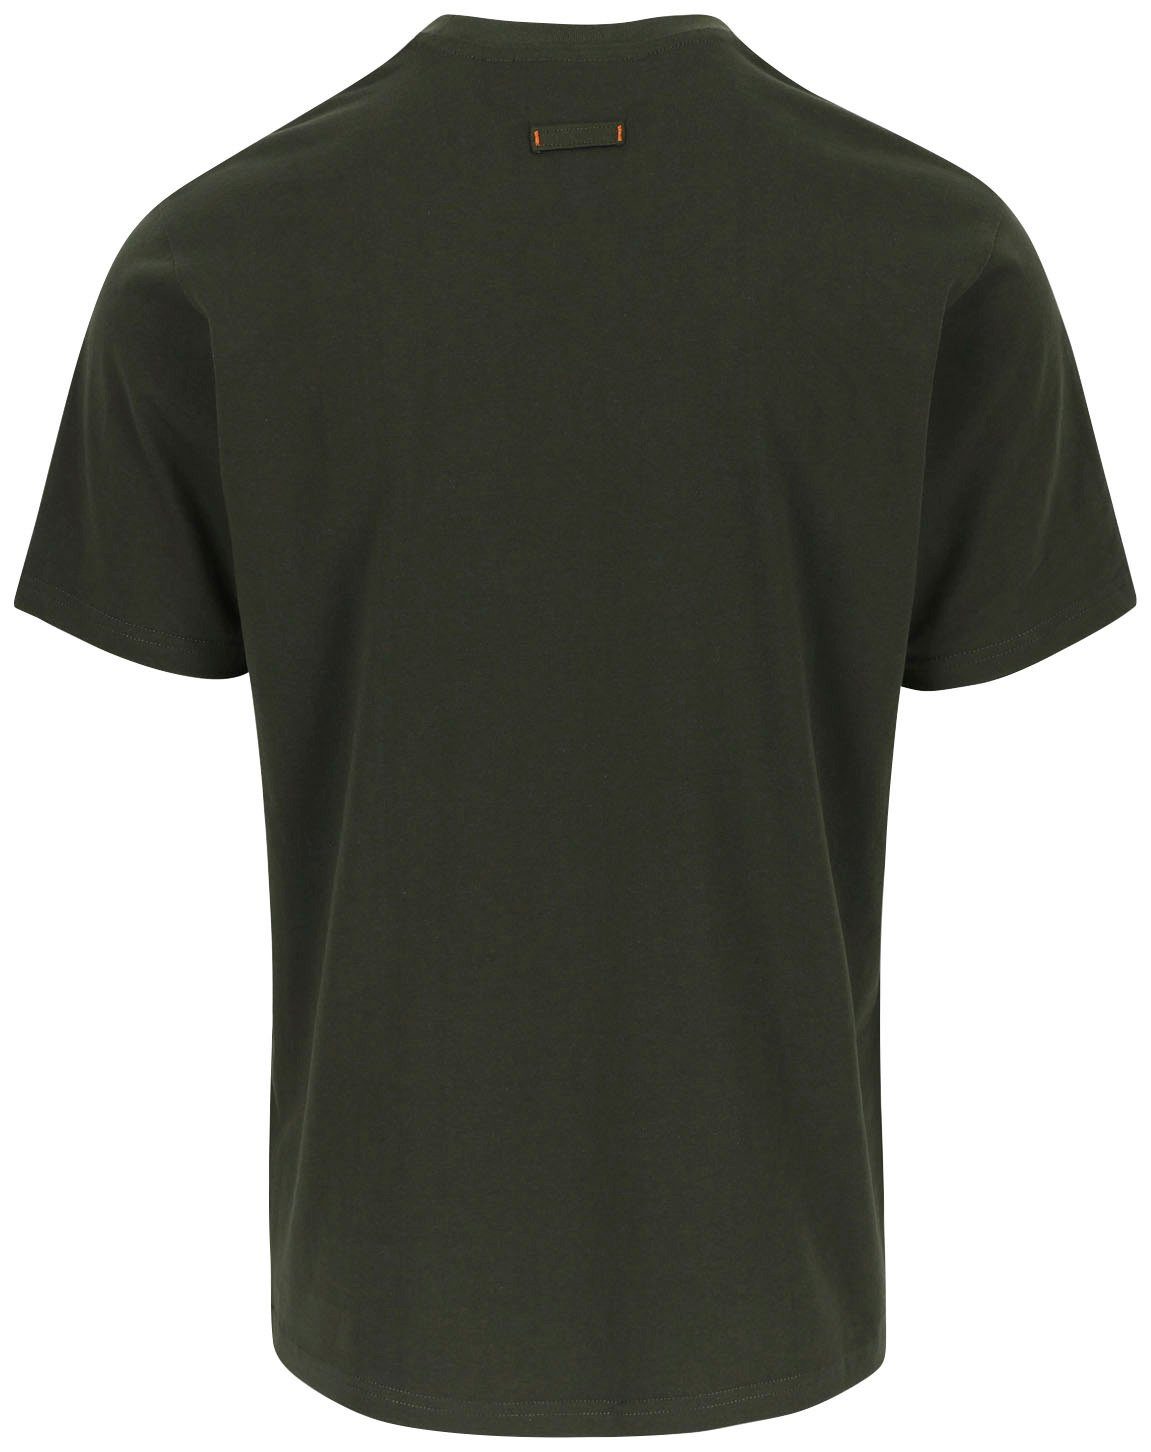 mit khaki ENI T-Shirt angenehmes Herock®-Aufdruck, Tragegefühl Herock Rundhals, Baumwolle,